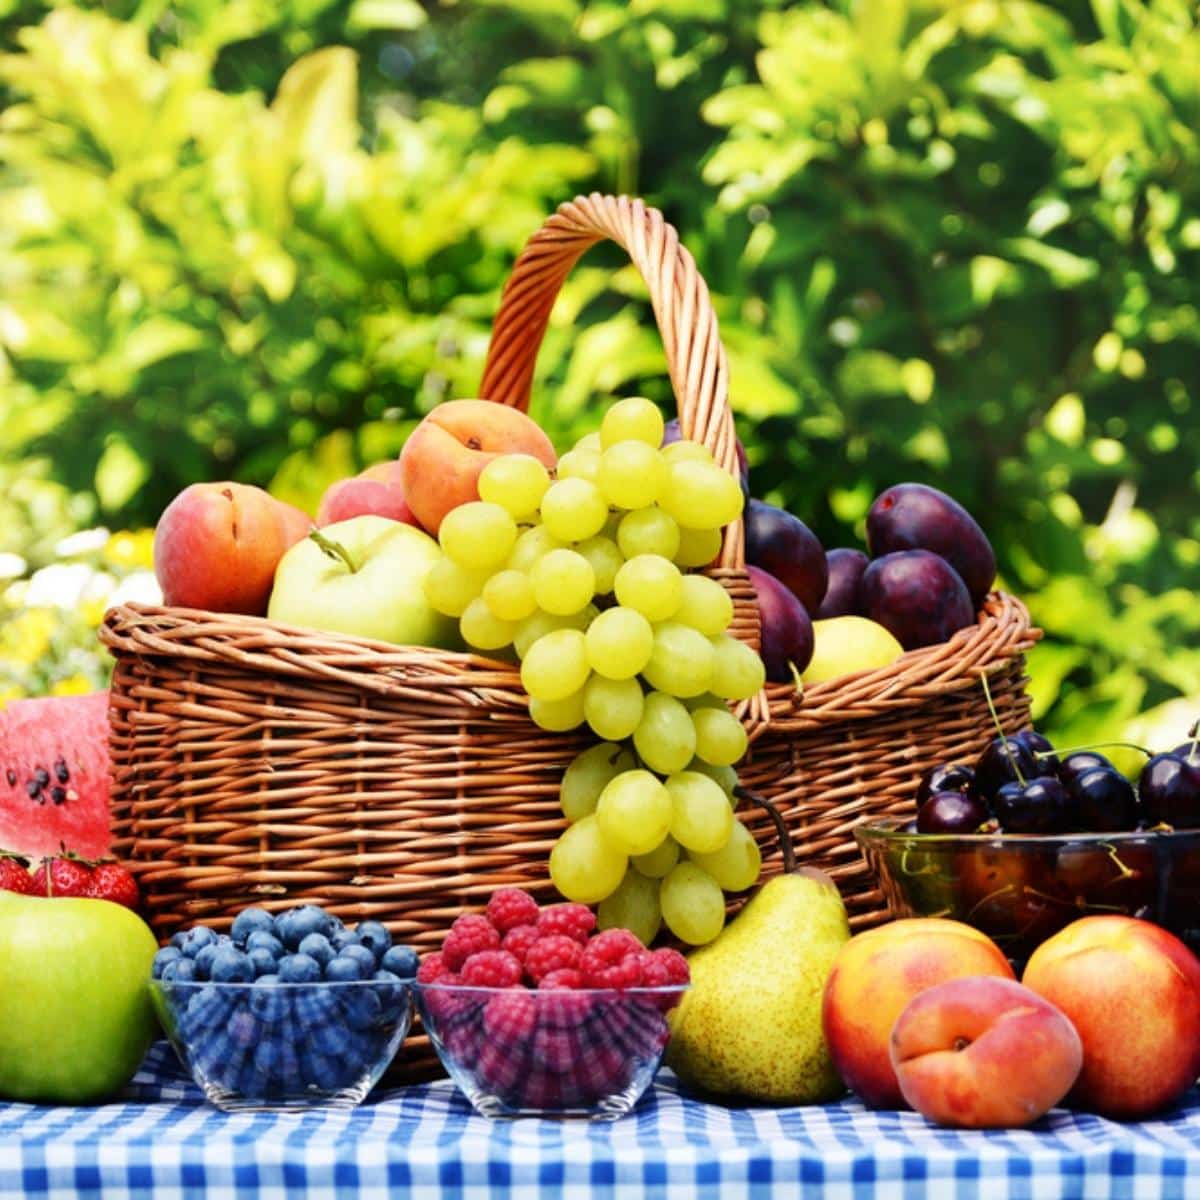 Basket of fresh organic fruits